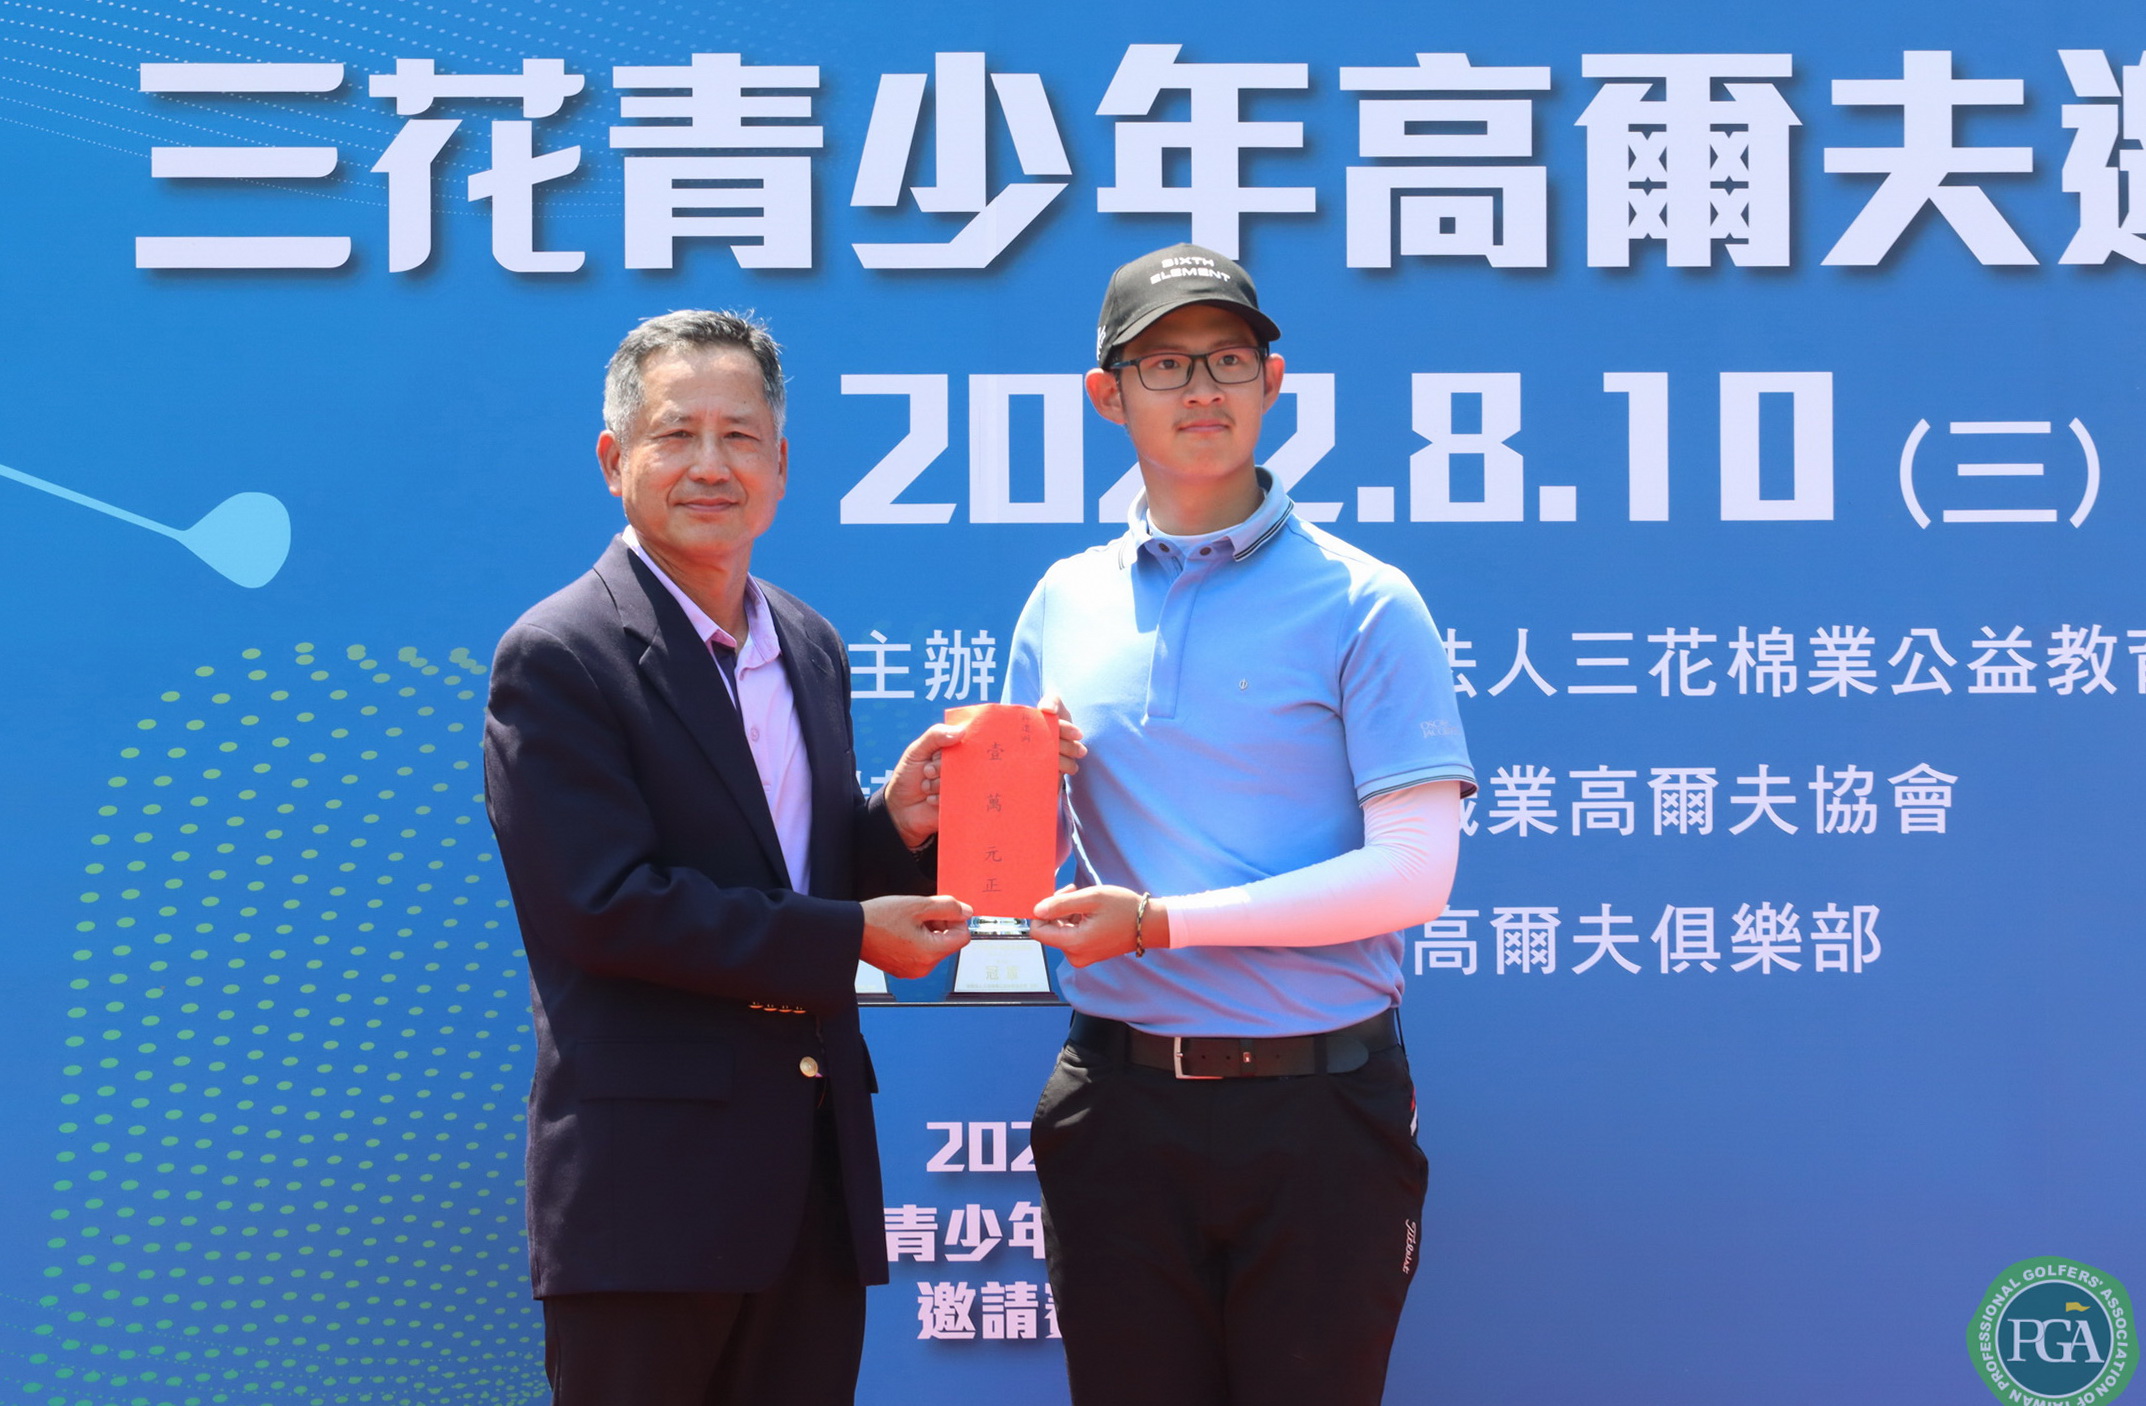 台北高爾夫俱樂部董事長林於豹(左)頒一桿進洞獎金給孔德恕。鍾豐榮攝影